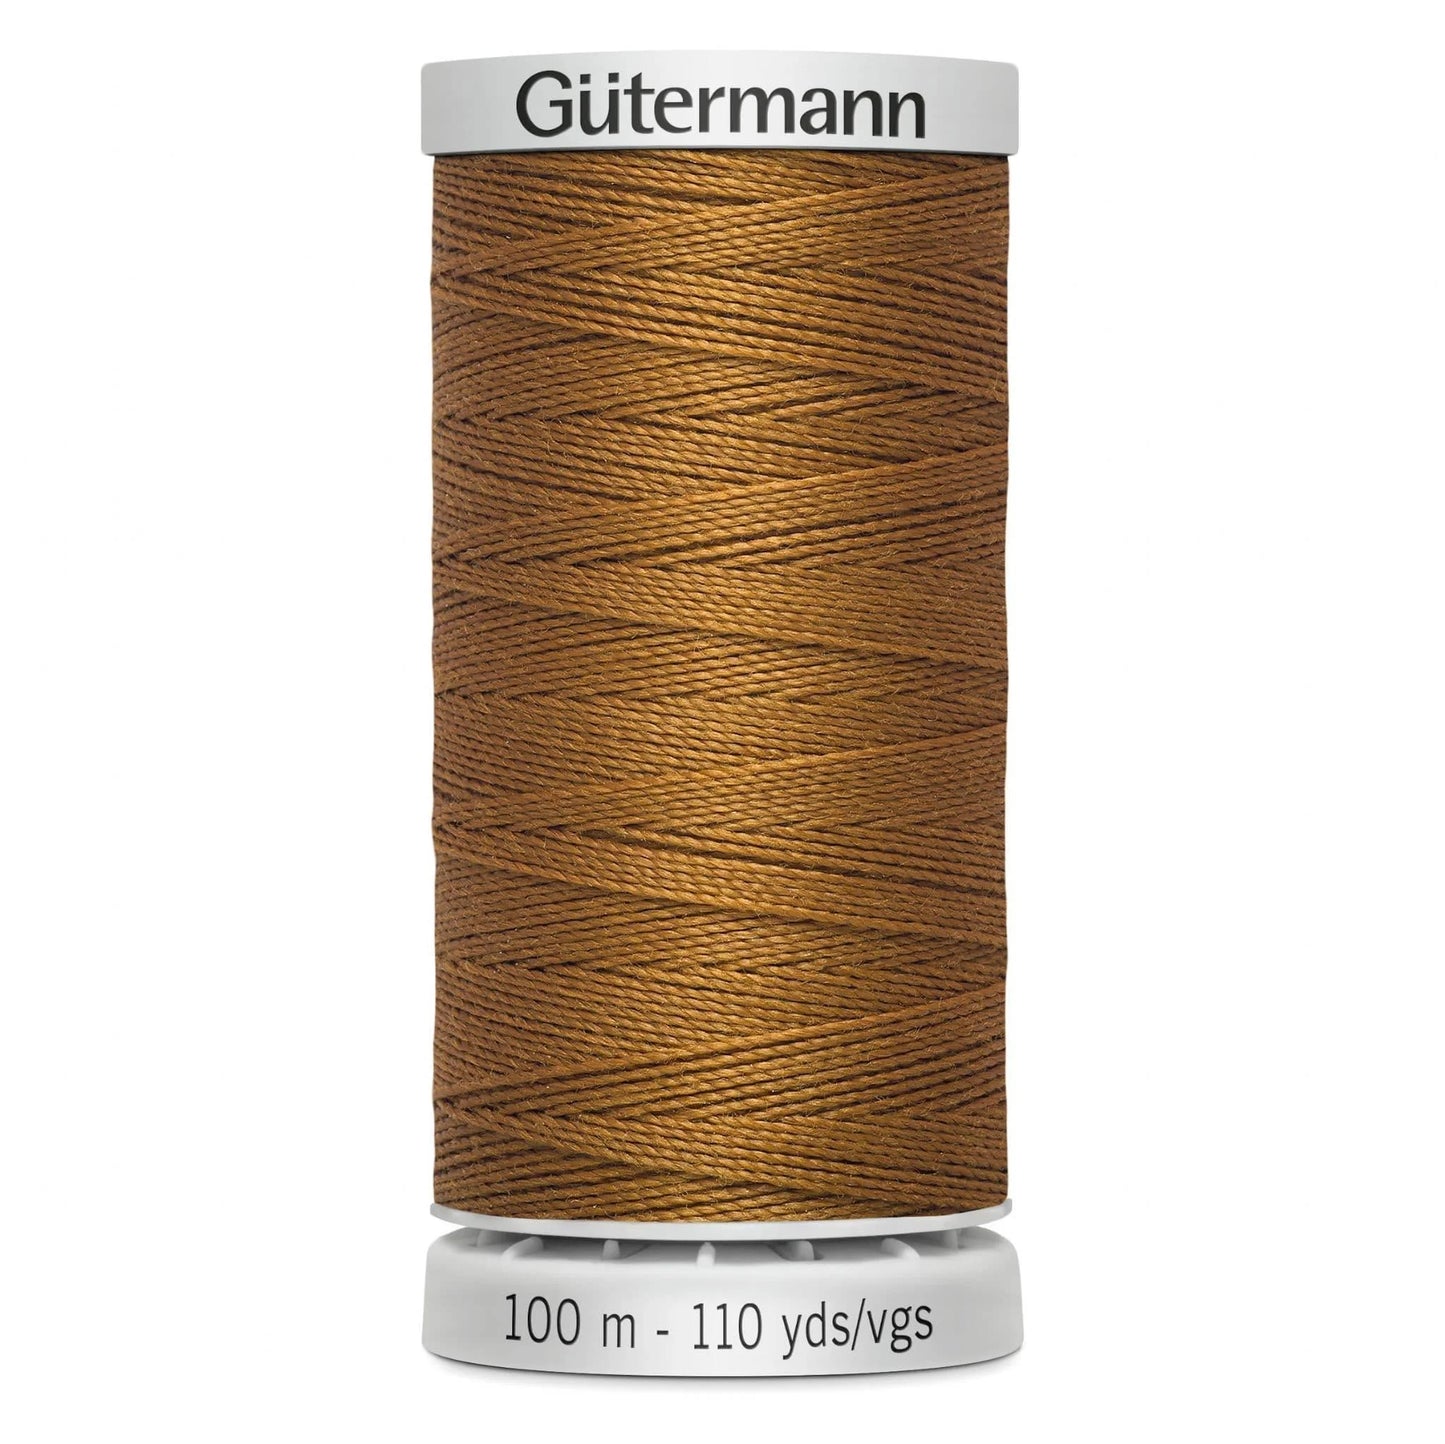 448 Gutermann Extra Strong Thread 100m - Light Brown